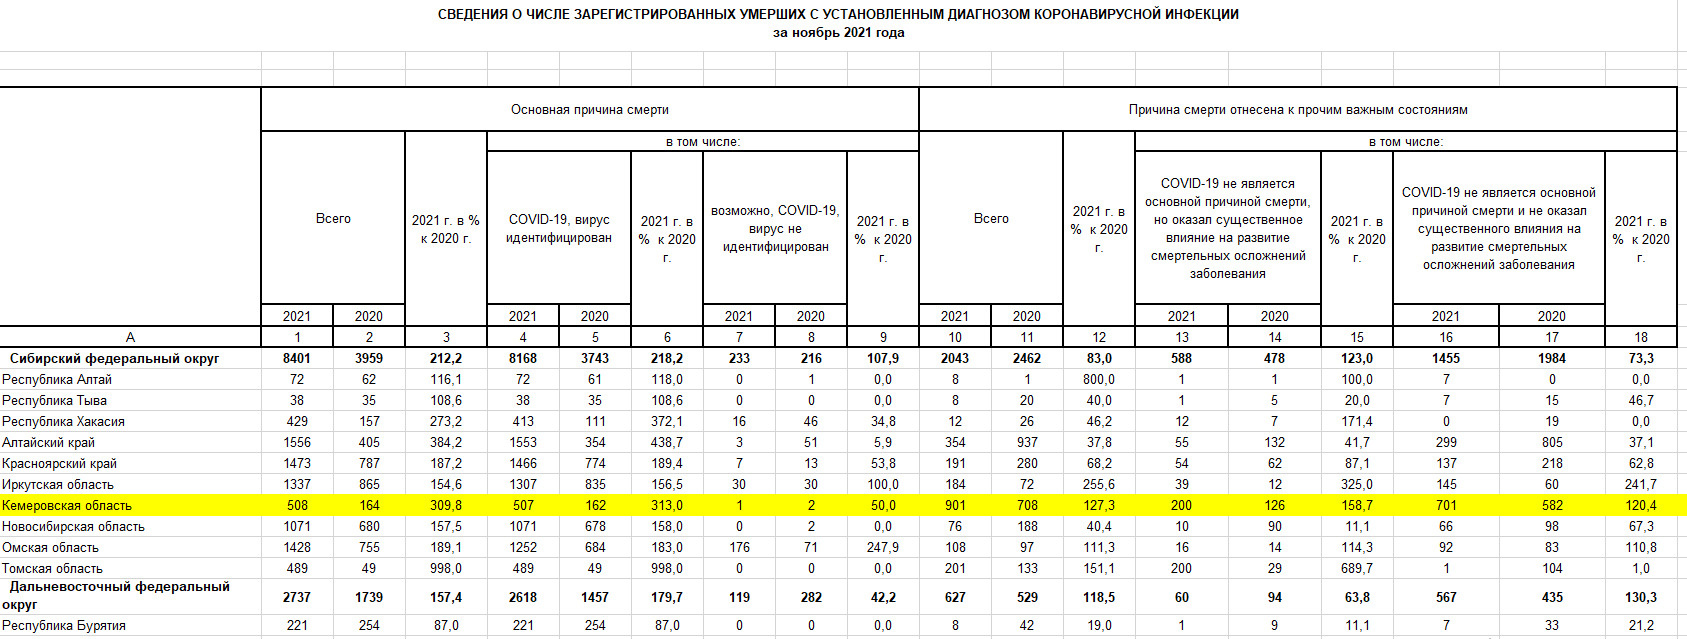 Данные о смертности от коронавируса за ноябрь 2021 года в регионах Сибири